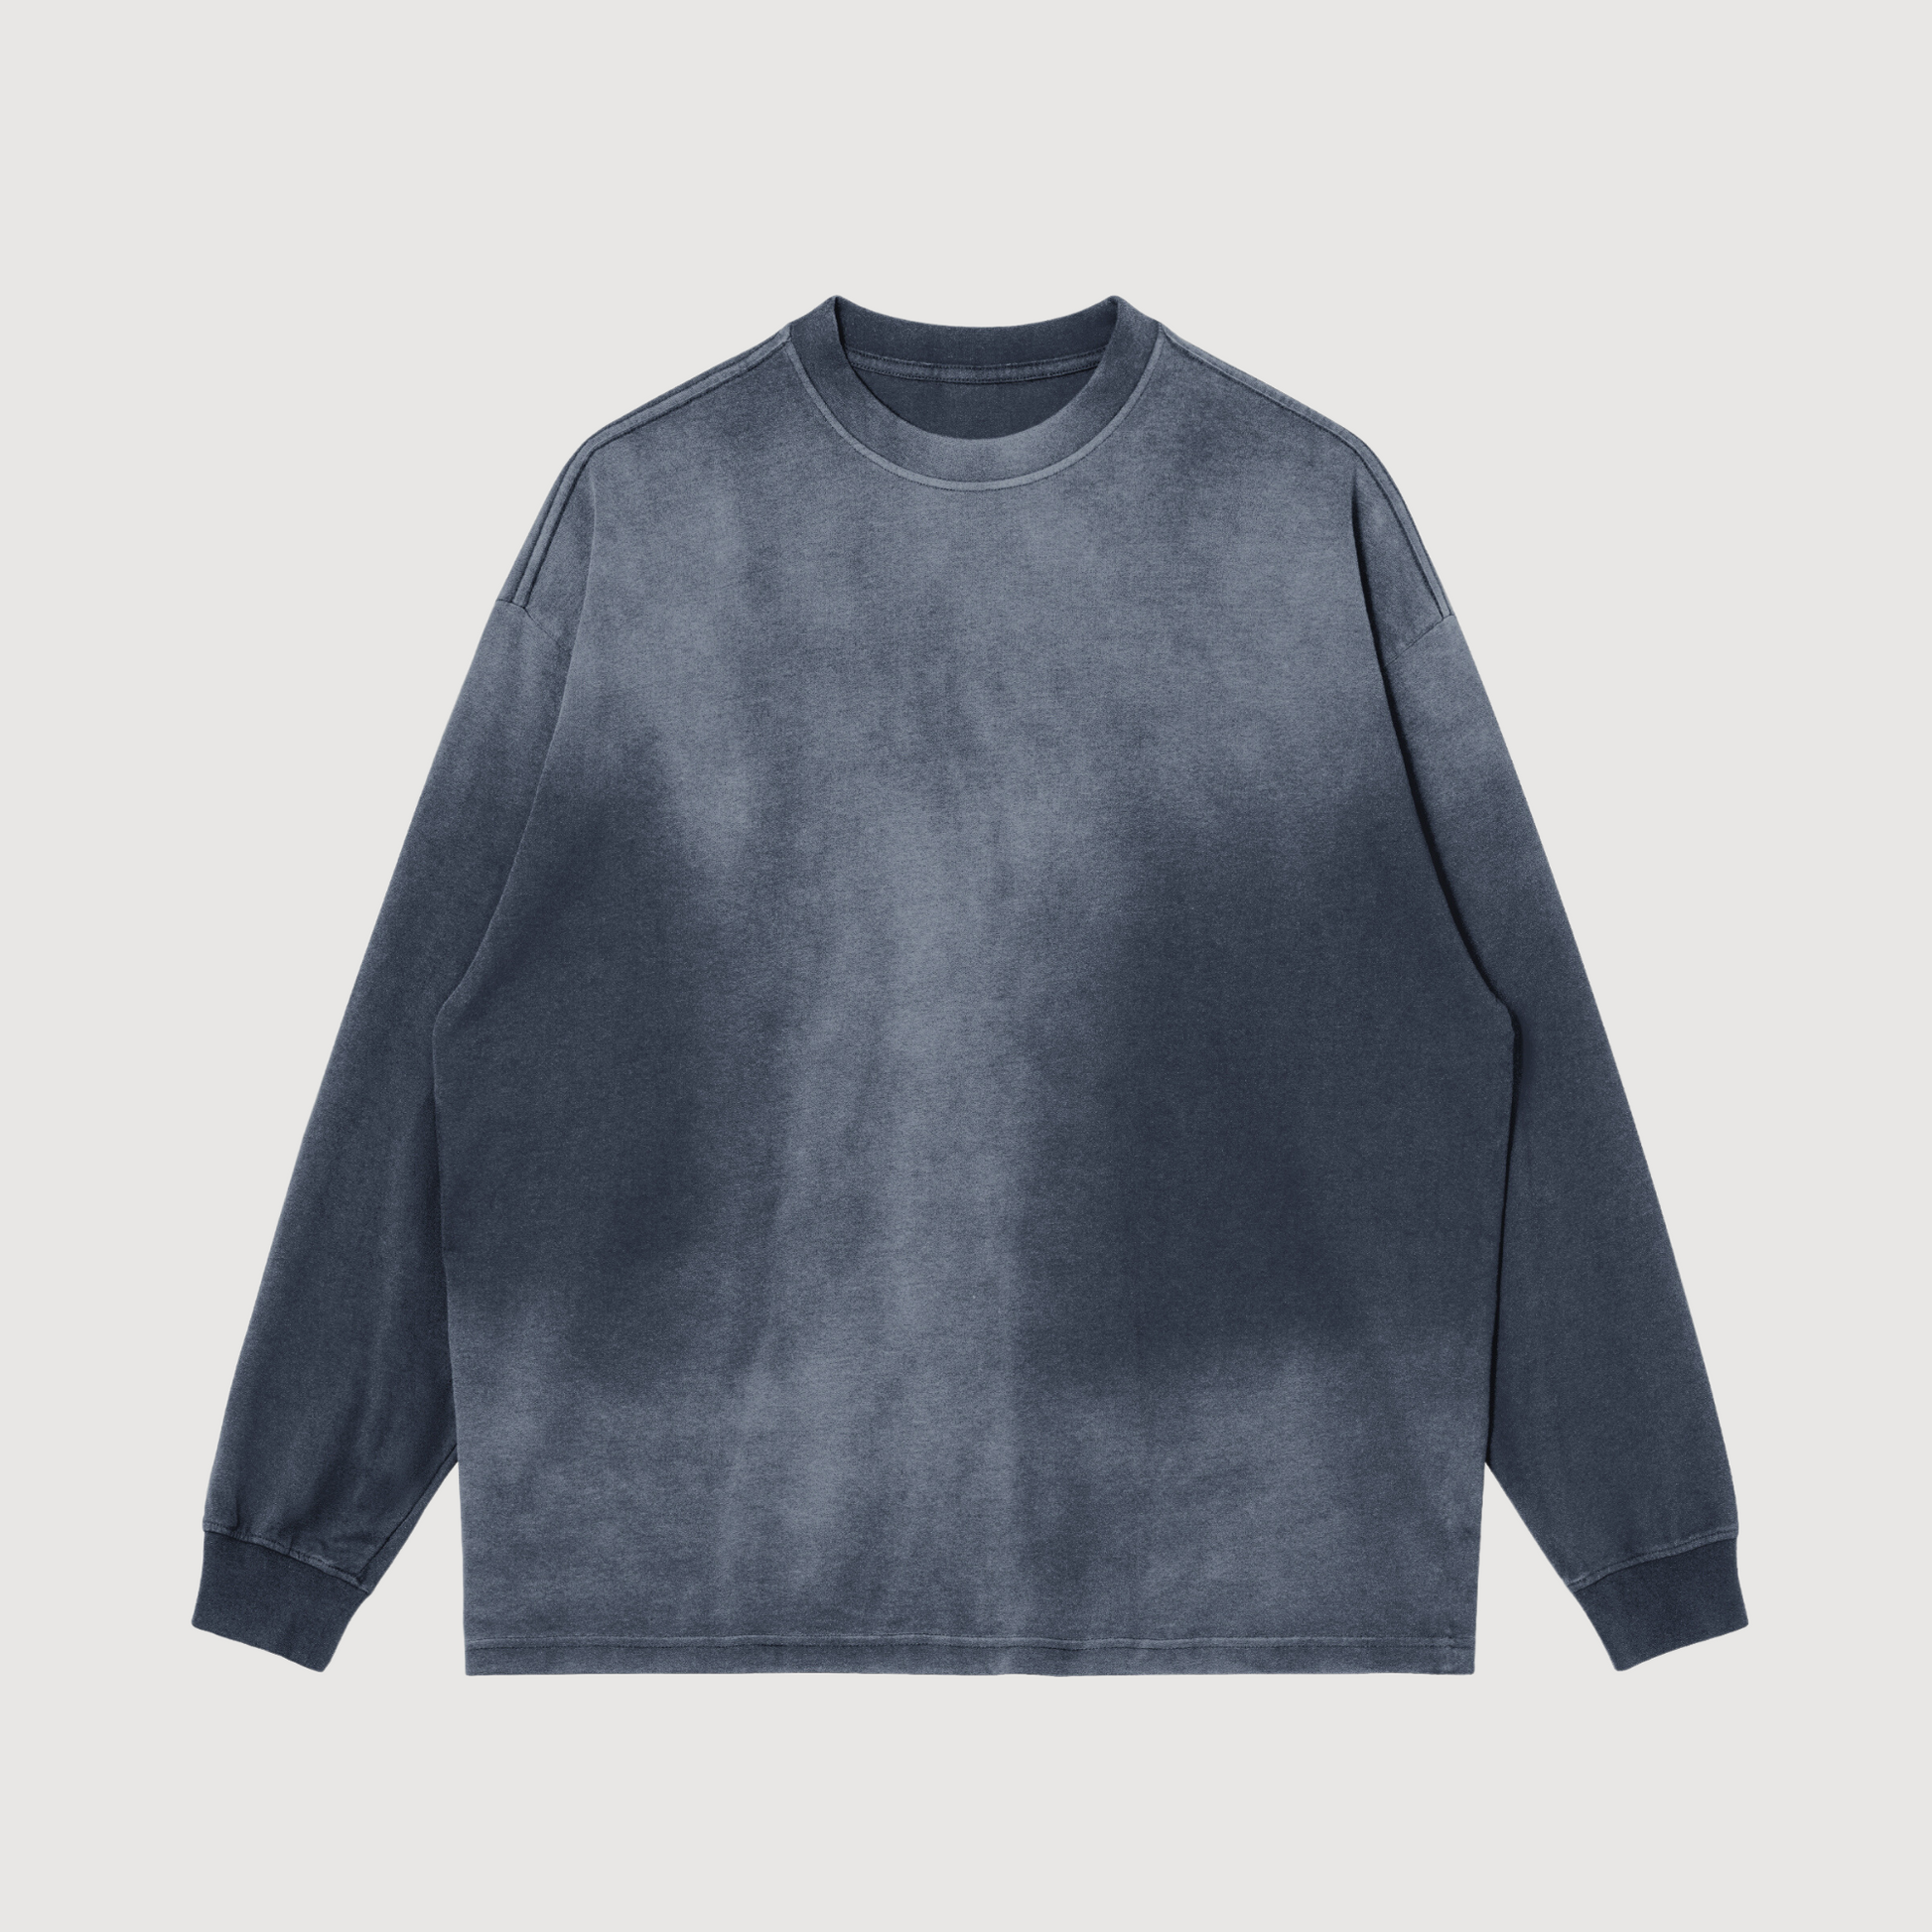 Black and grey oversized crewneck sweatshirt of luxury streetwear